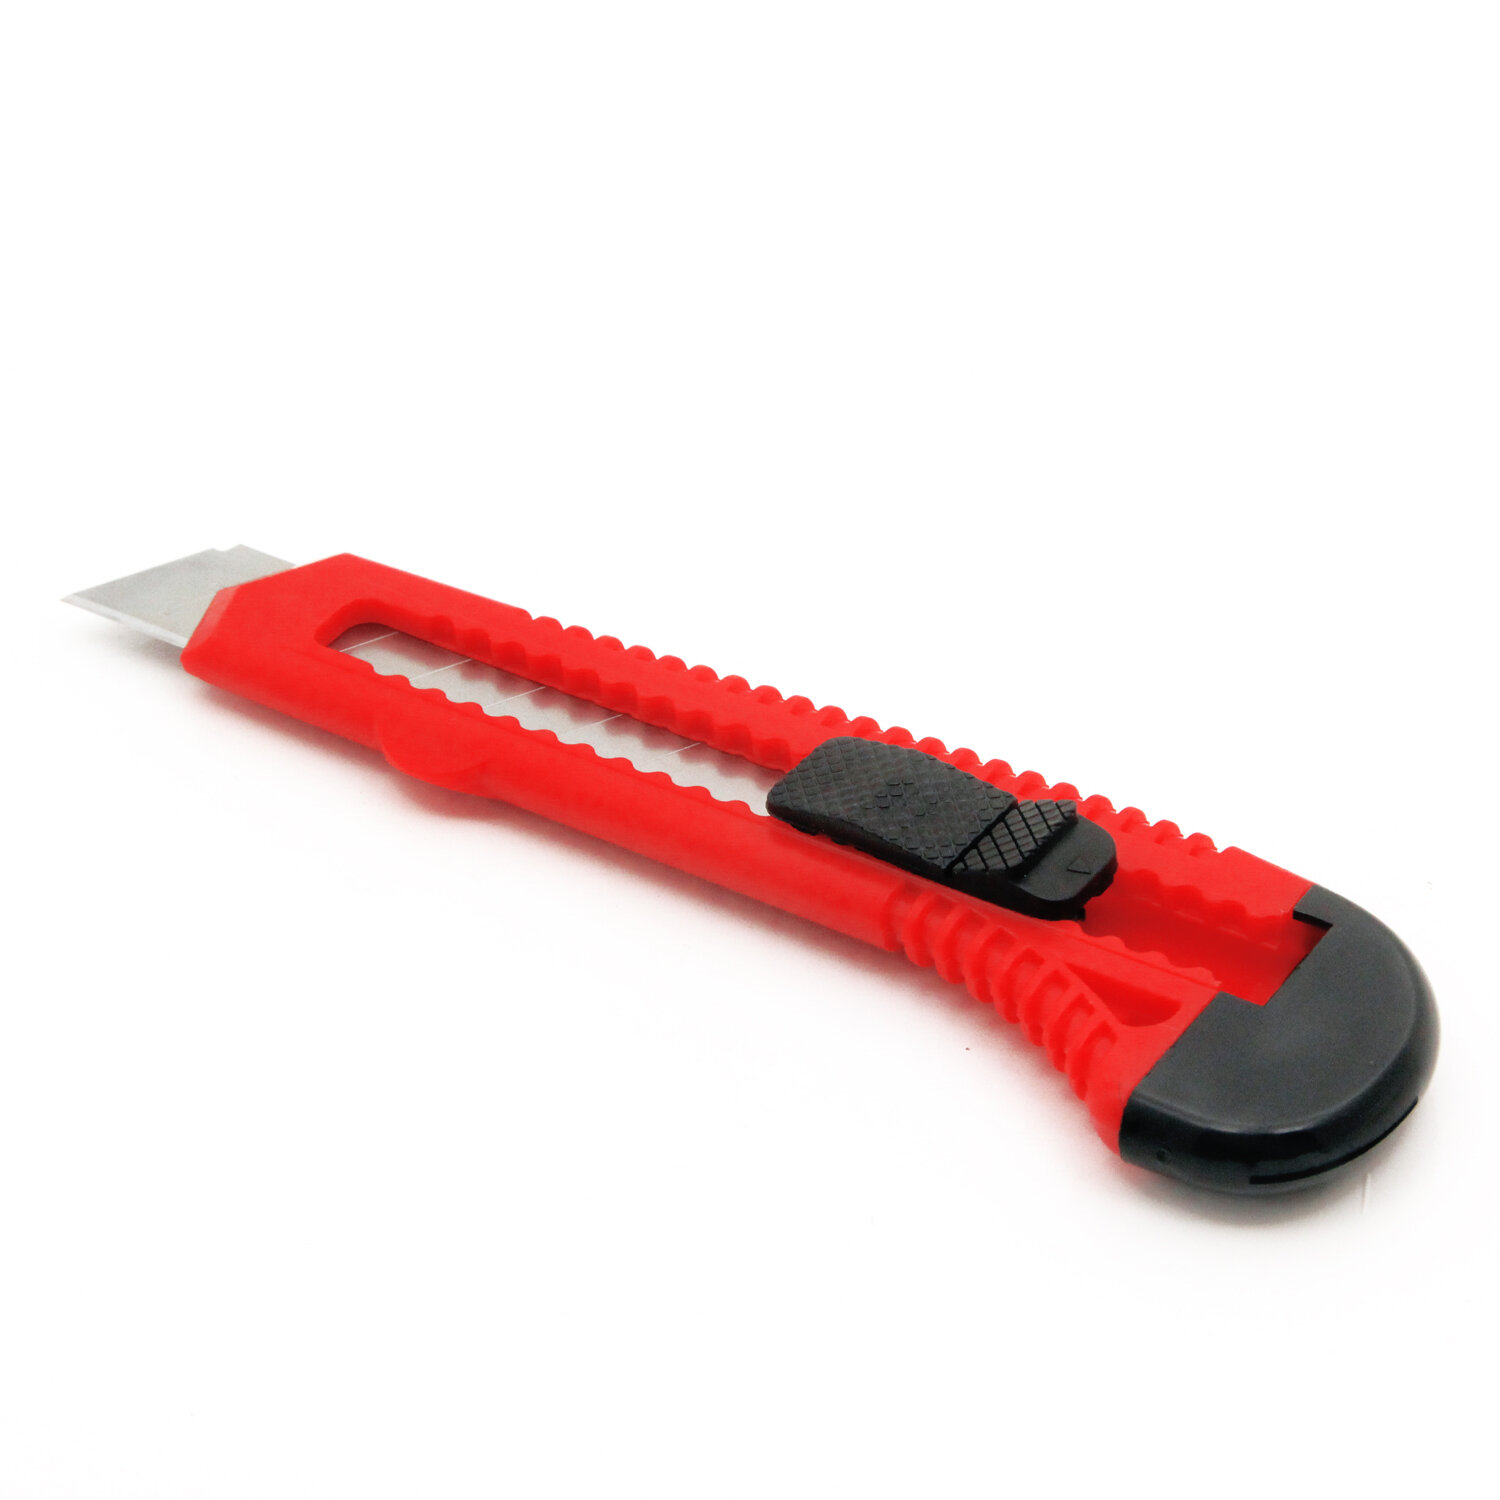 Нож строительный Vira Pushlock пластиковый корпус сегментное лезвие 18 мм